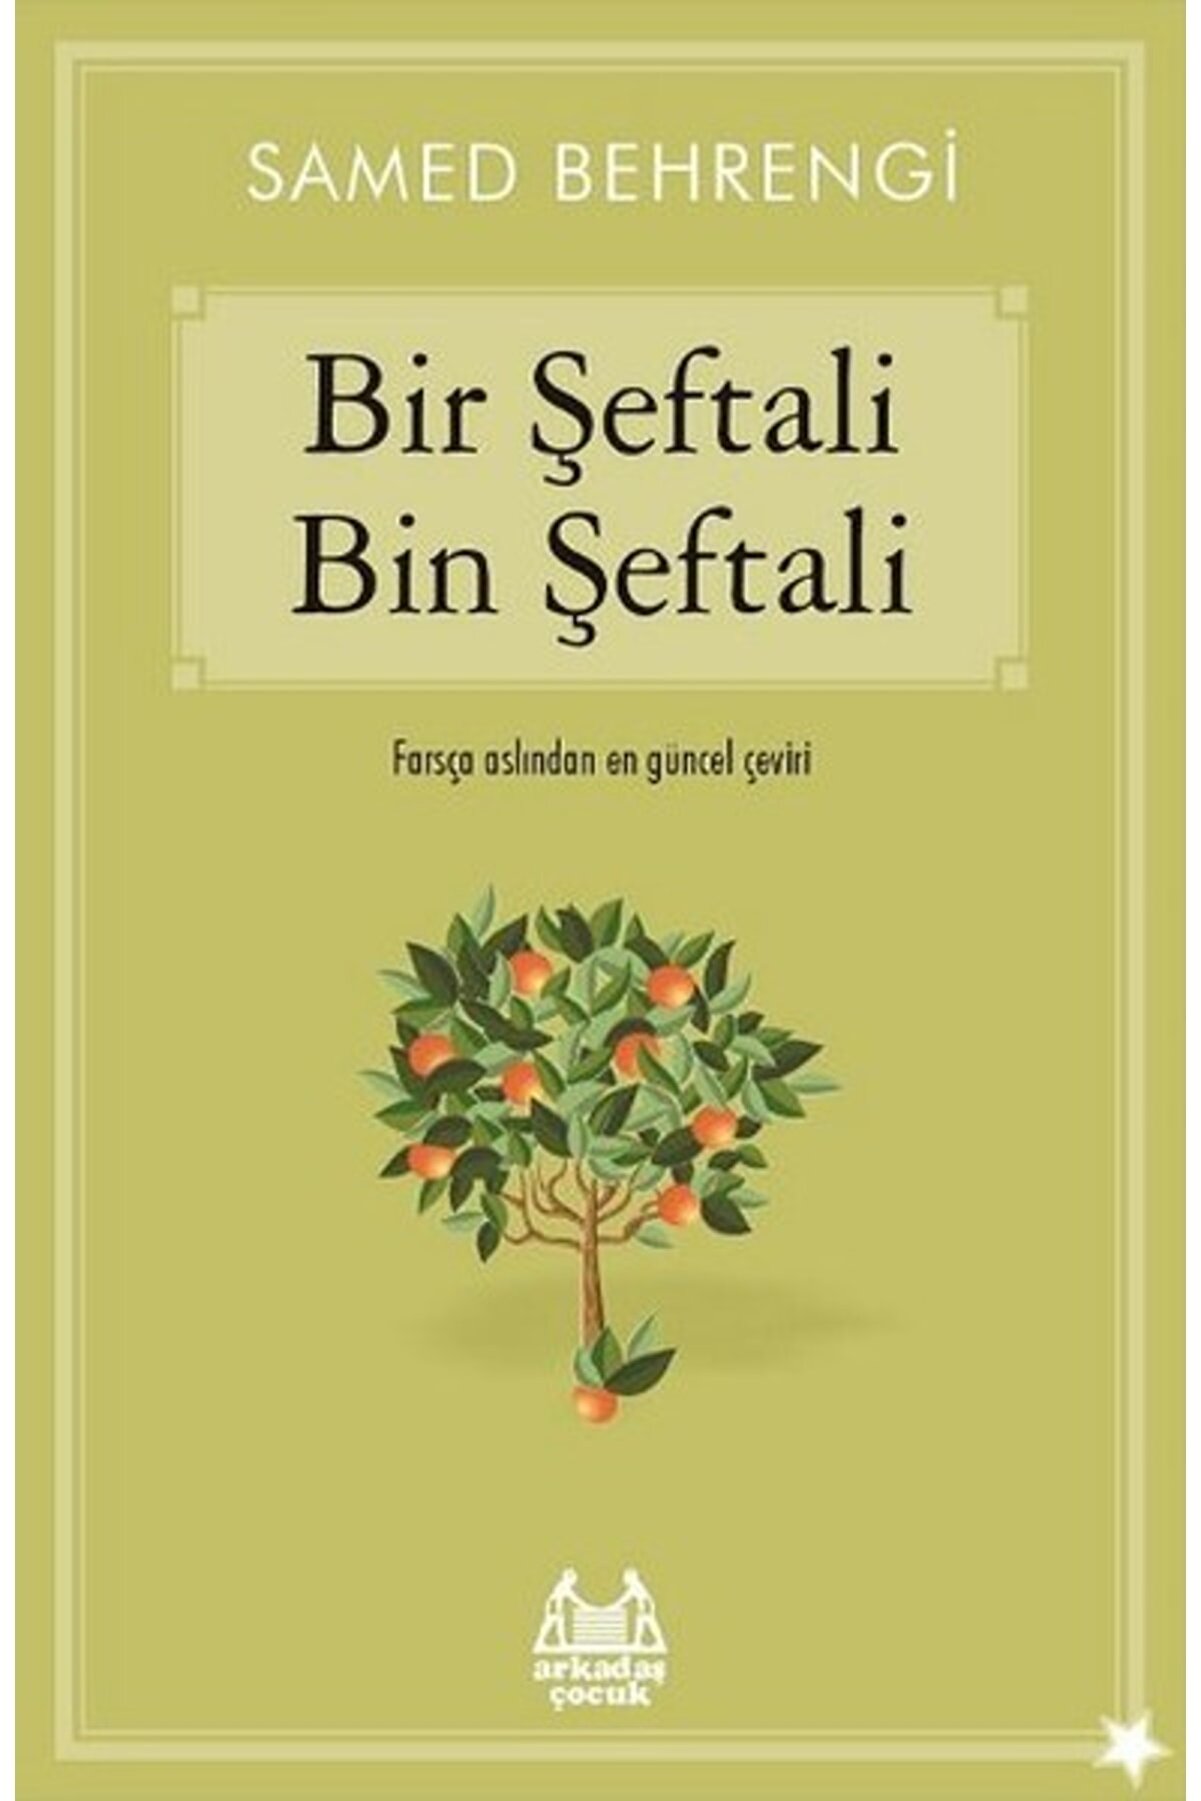 Arkadaş Yayıncılık Bir Şeftali Bin Şeftali /samed Behrengi /